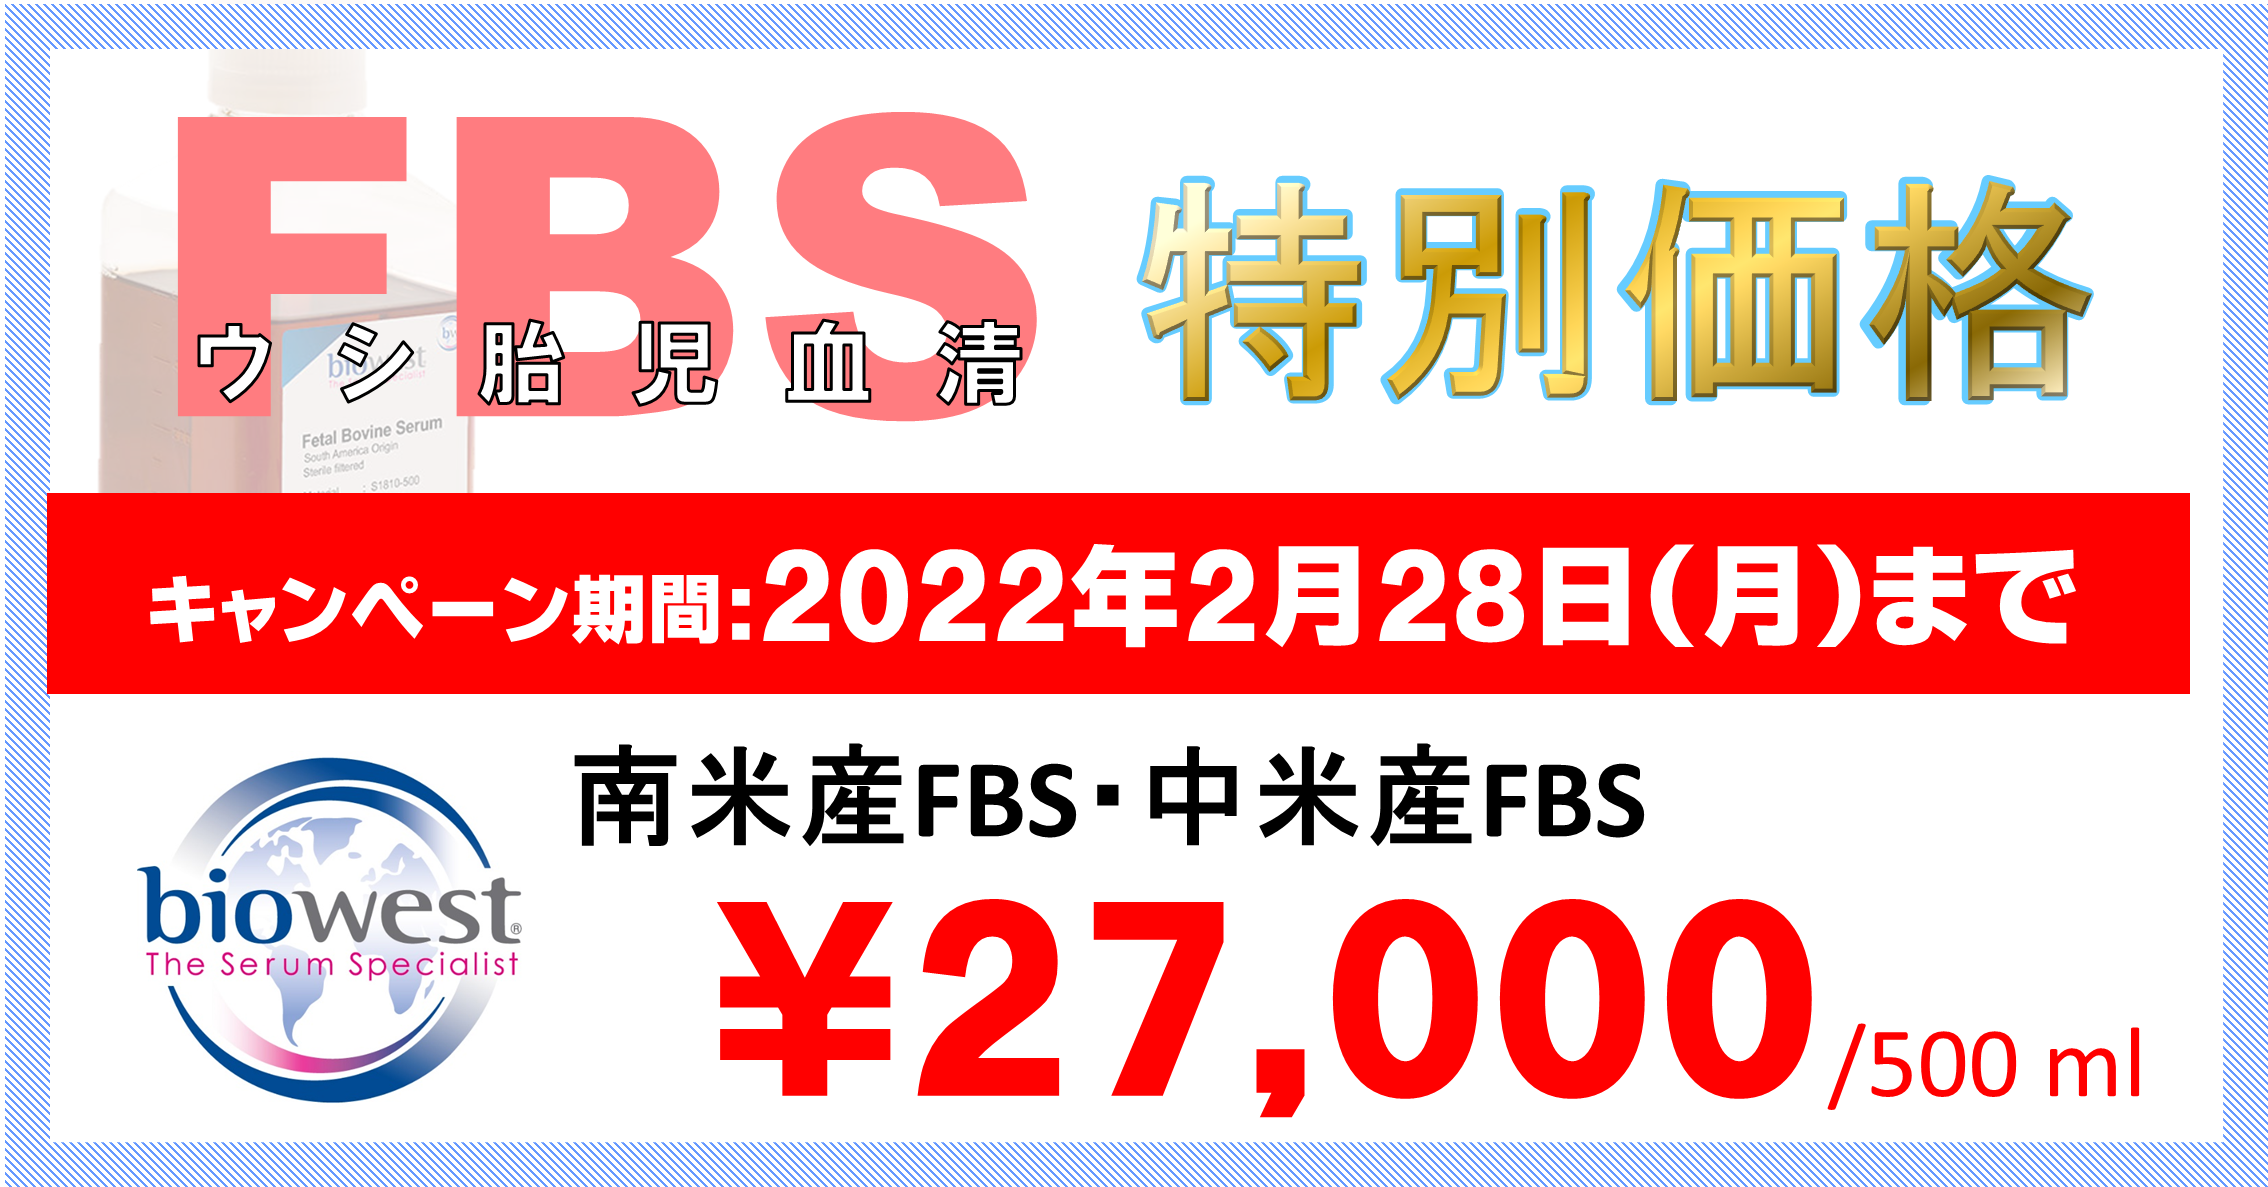  南米産・中米産FBS特別価格￥27,000